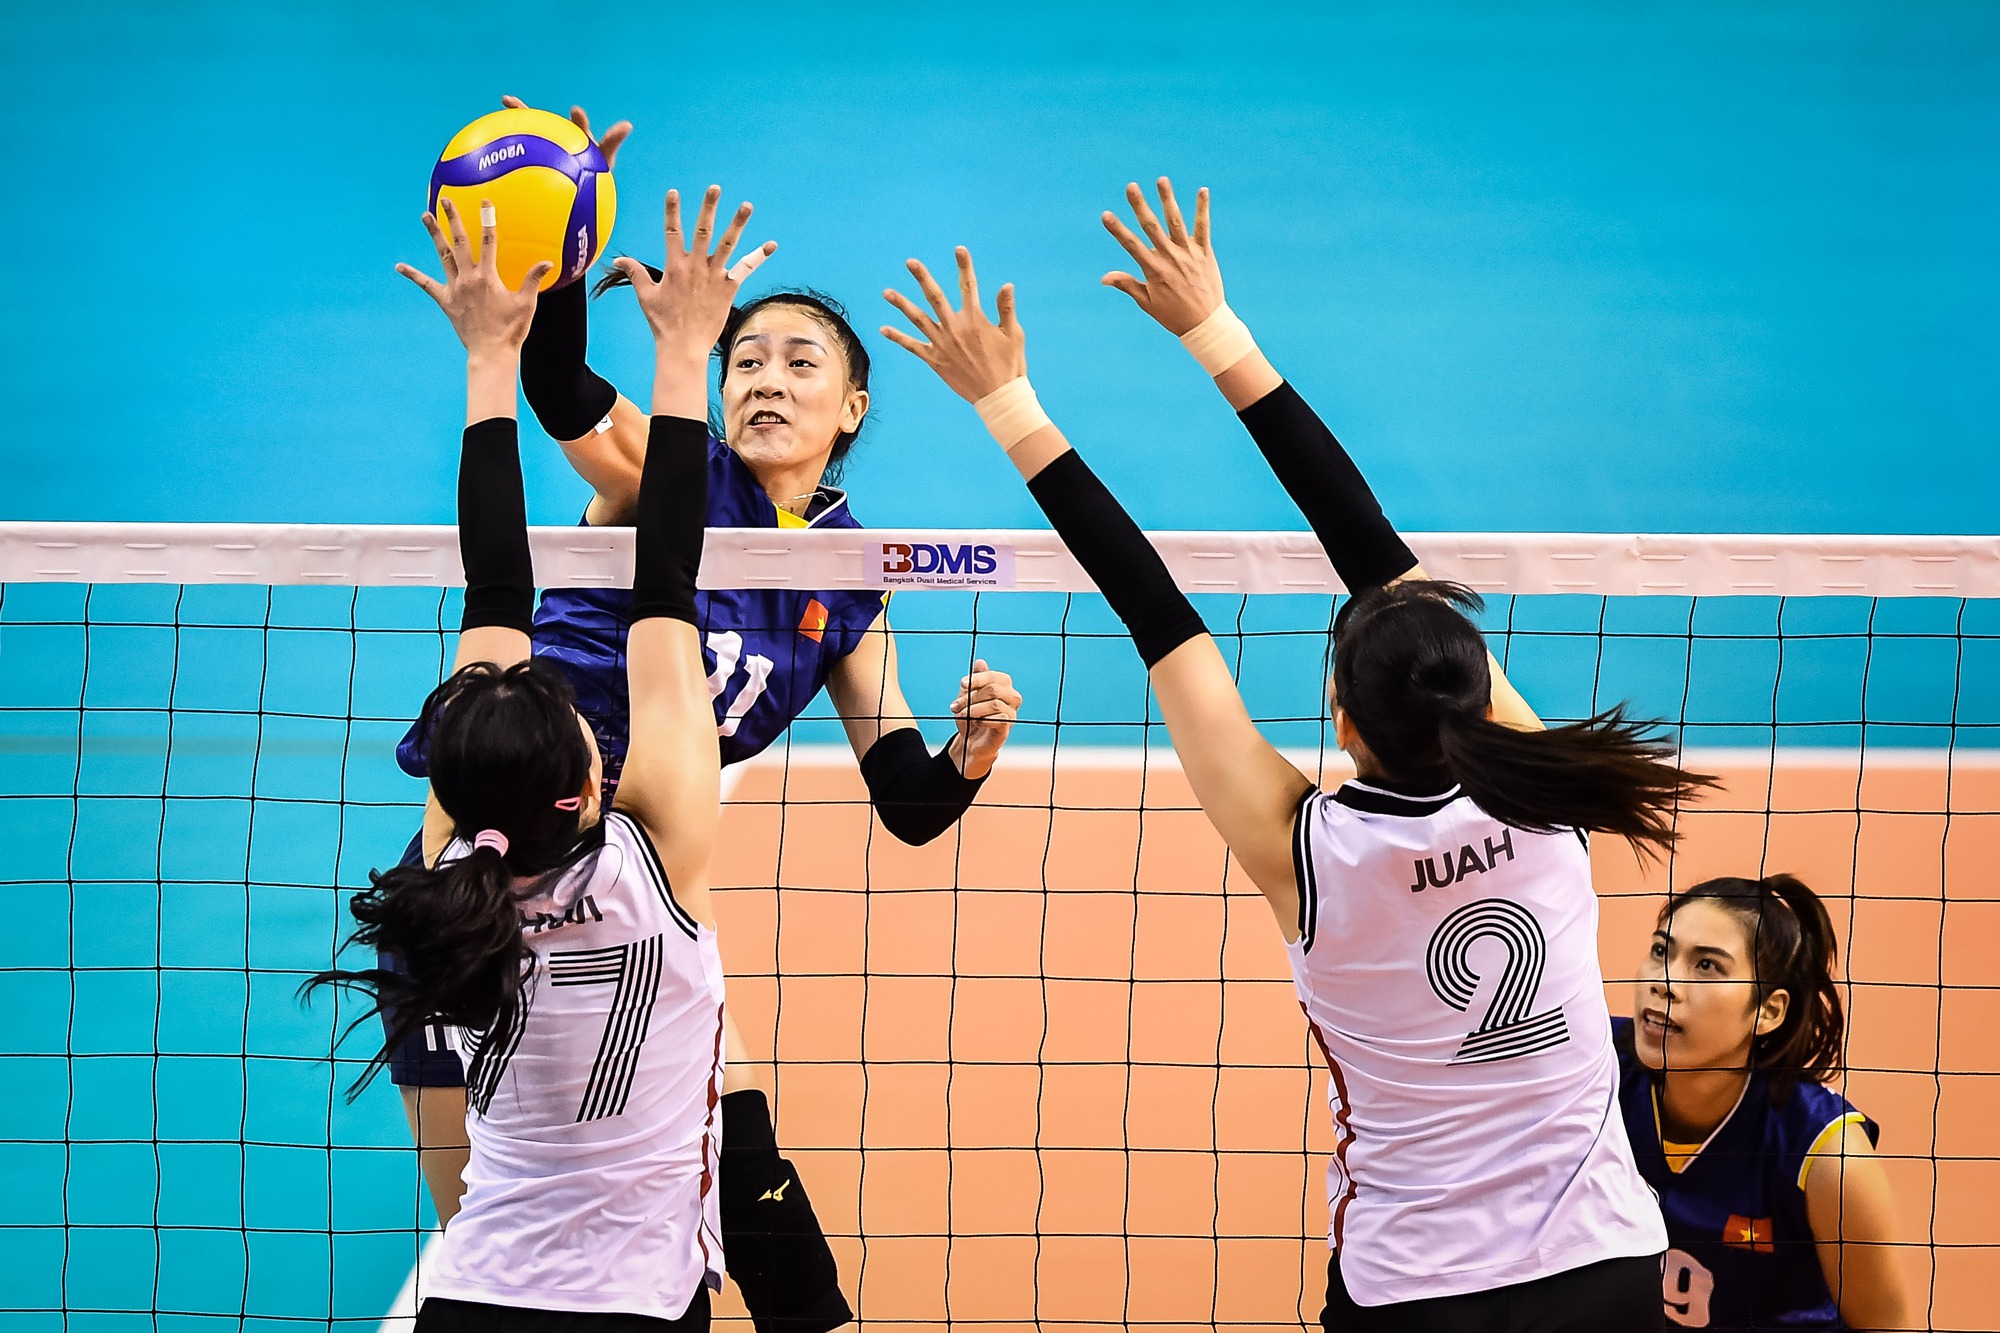 Chấn động bóng chuyền châu Á, tuyển nữ Việt Nam thắng ngược Hàn Quốc - Ảnh 3.